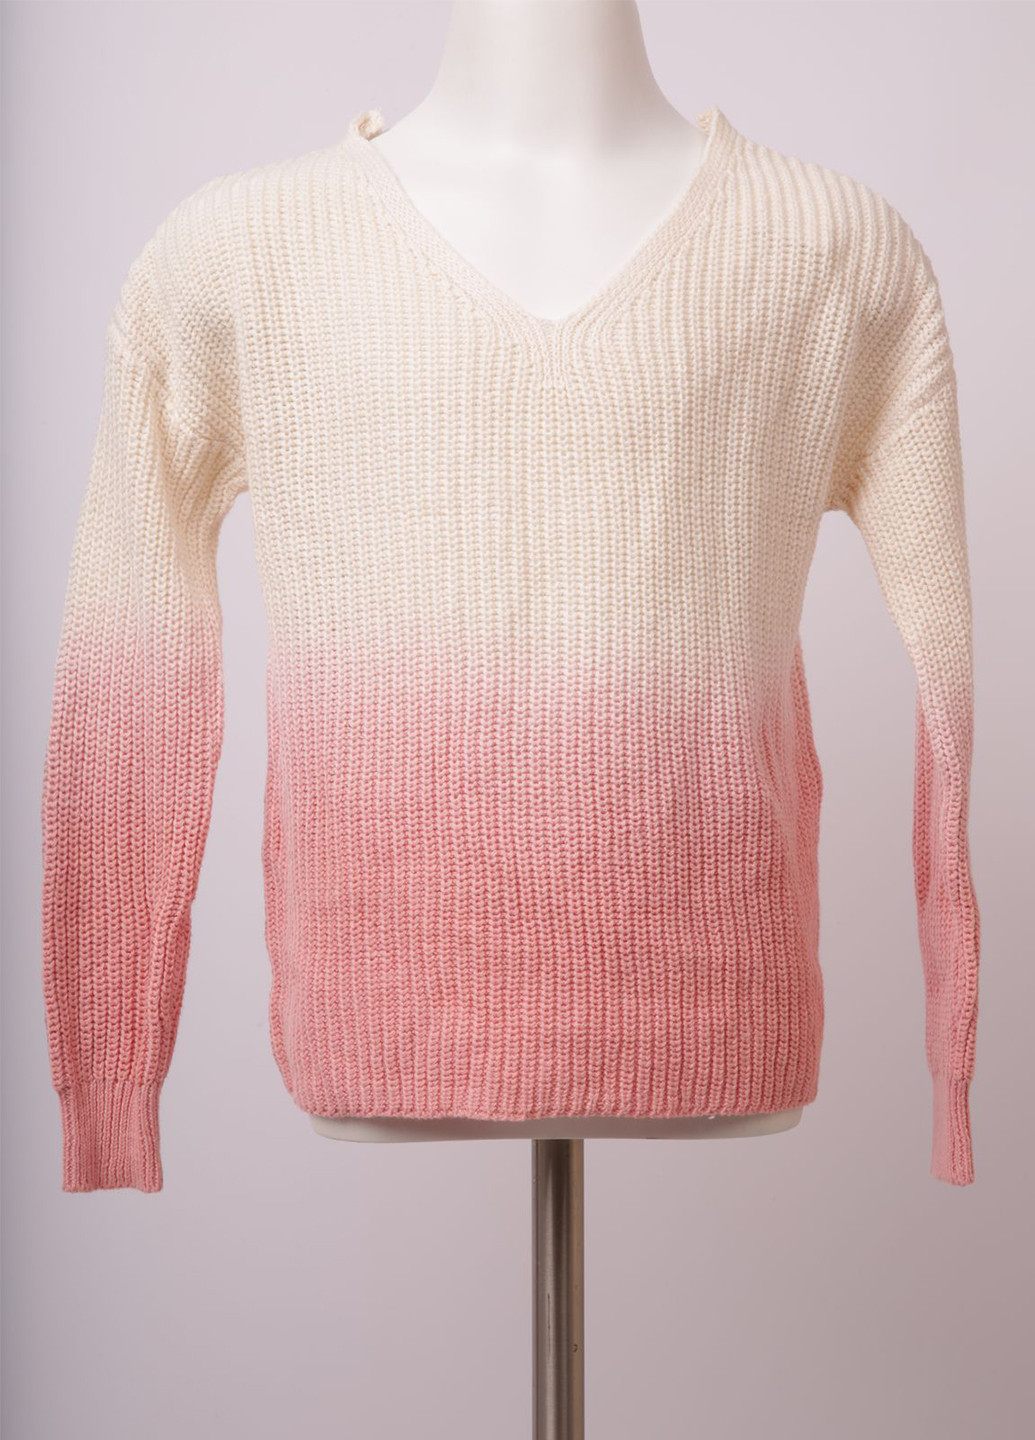 Комбинированный демисезонный пуловер пуловер Justice